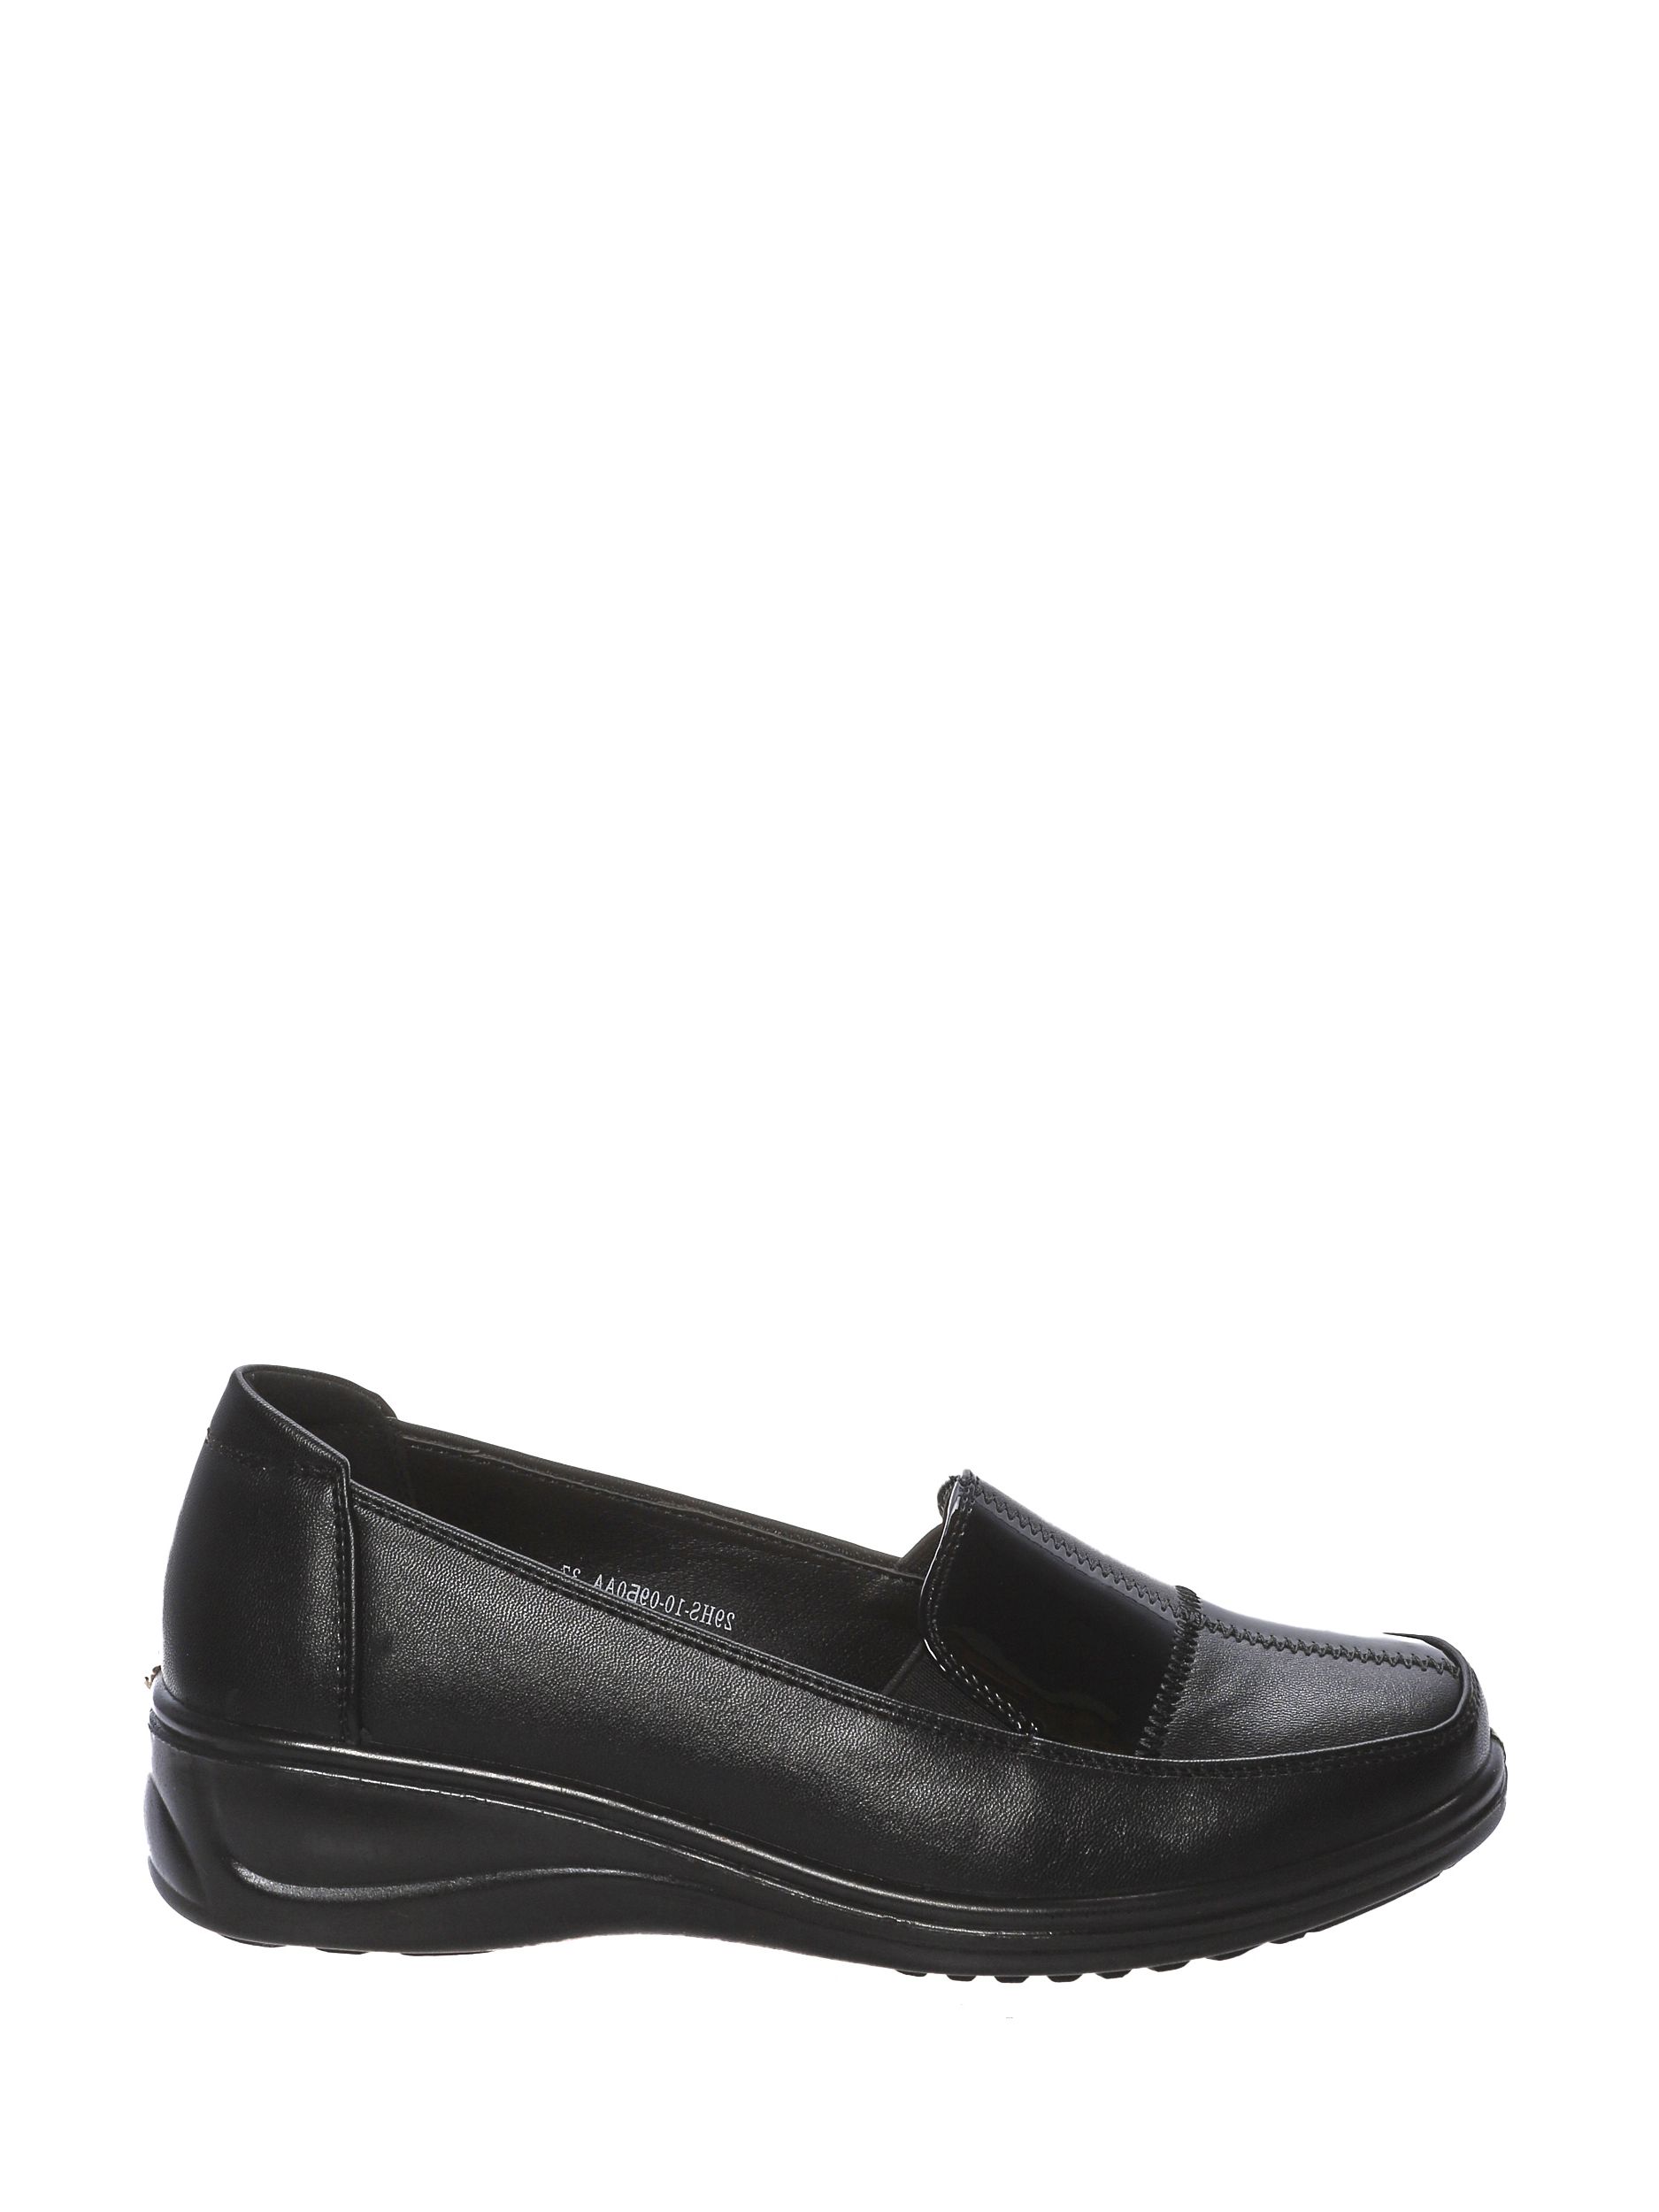 Туфли женские 4x4 shoes 29HS-10-09Б0 черные 40 RU